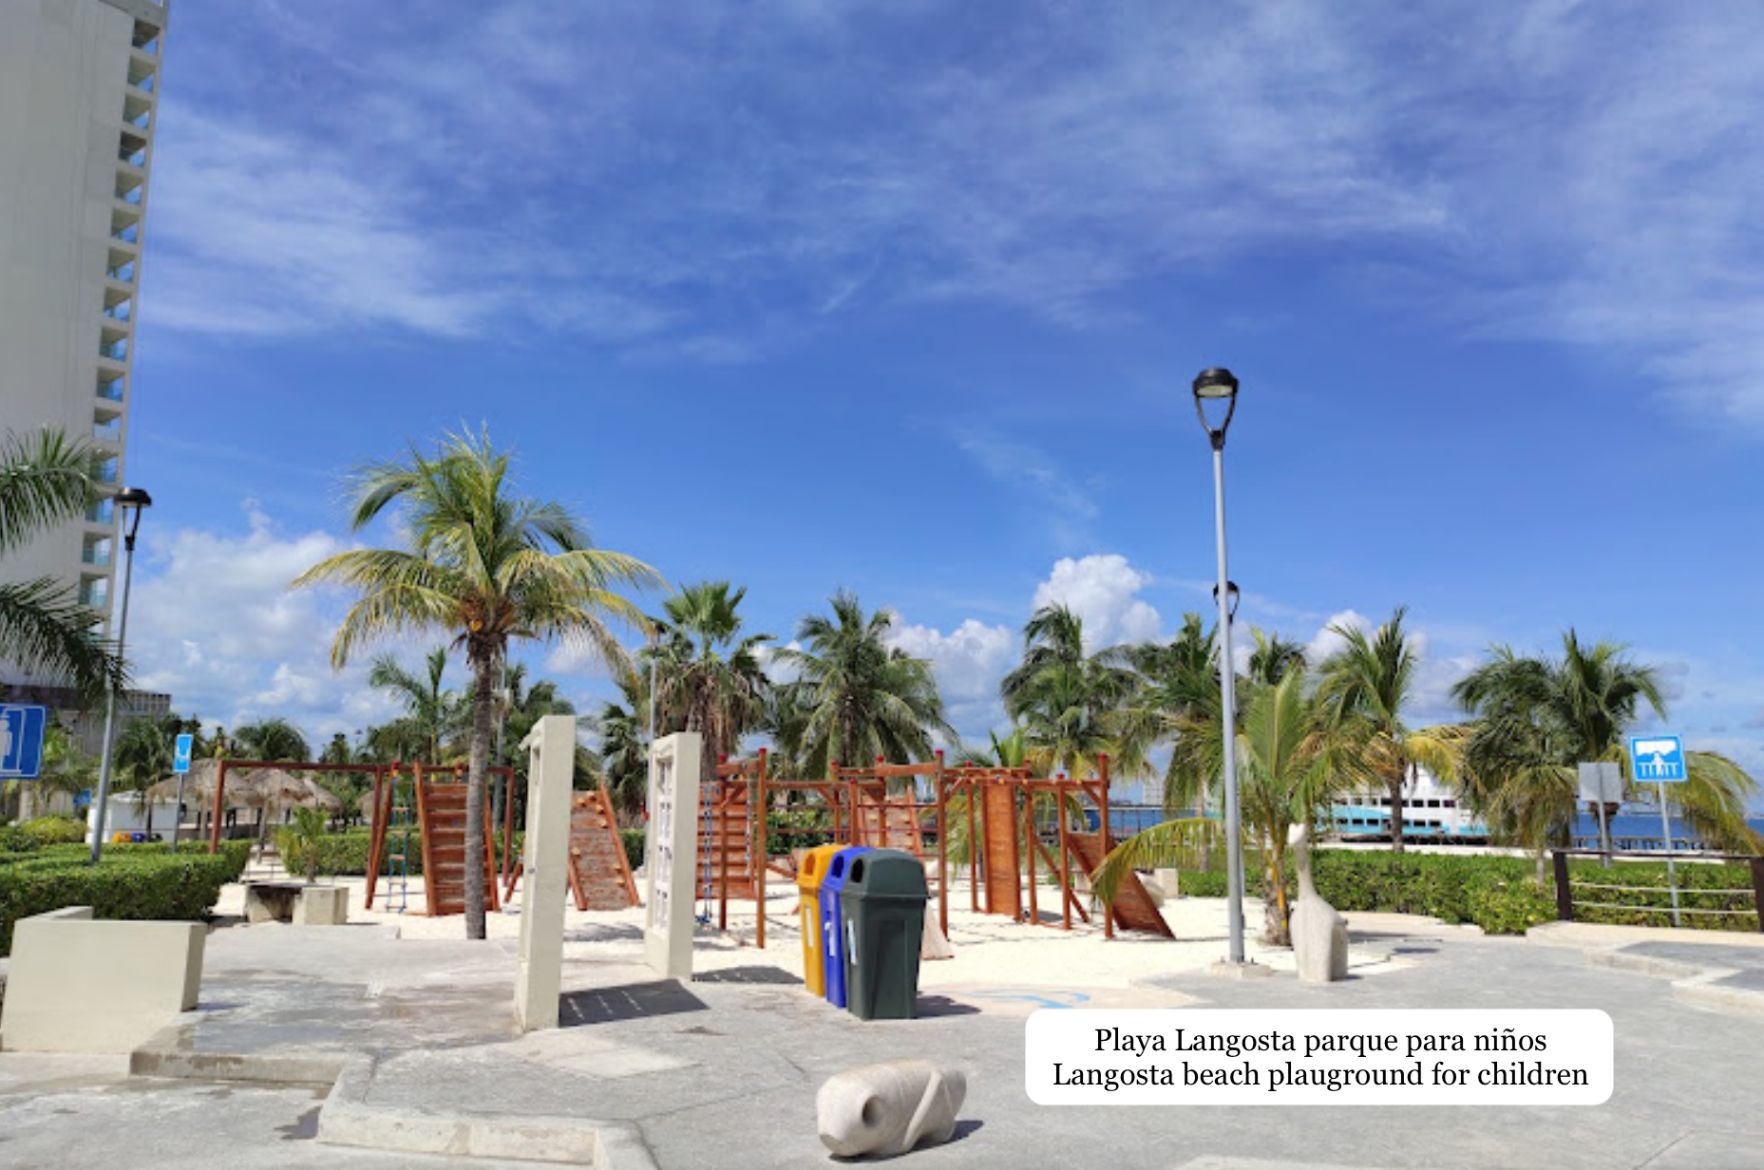 Departamento con terraza, jacuzzi, alberca con vista a la laguna, venta Cancun.